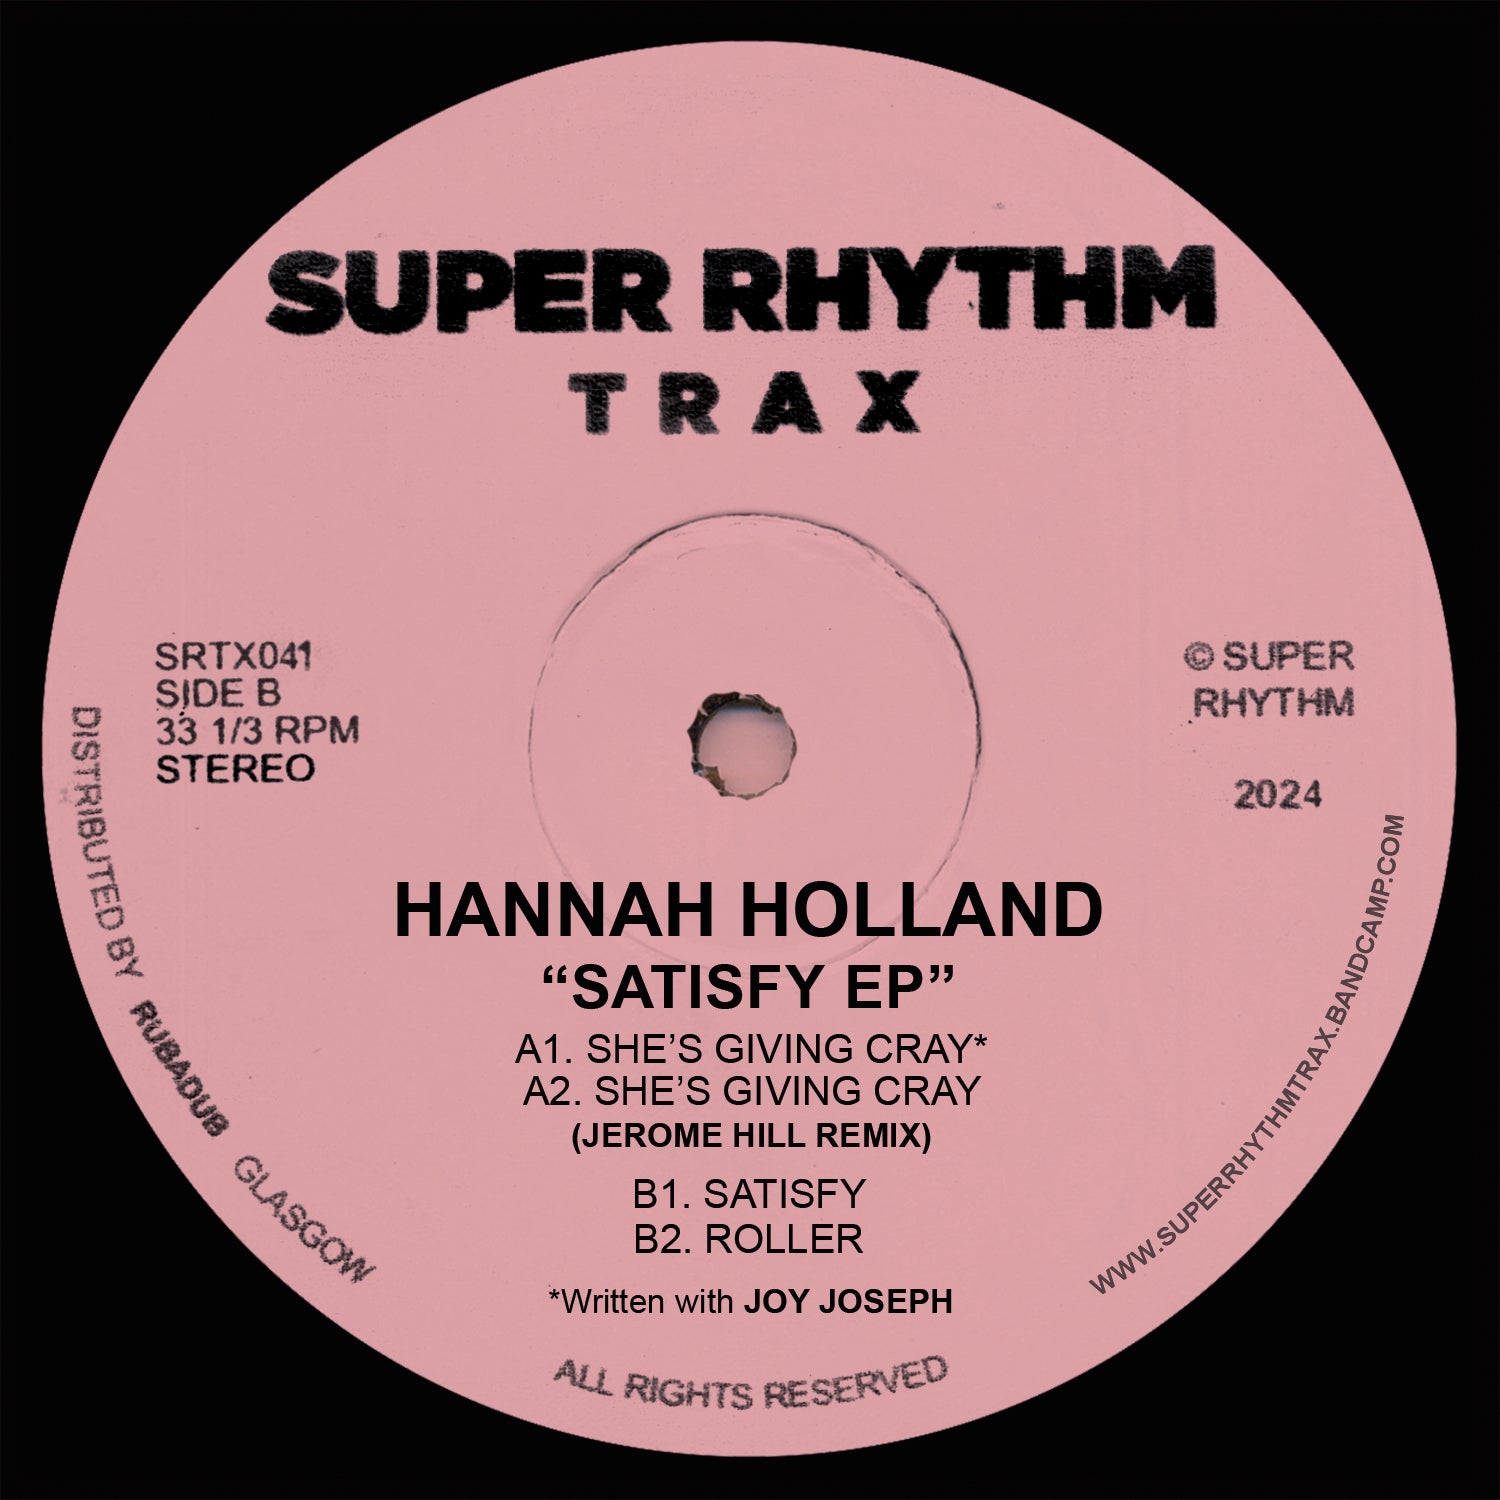 HANNAH HOLLAND 'SATISFY EP' 12"